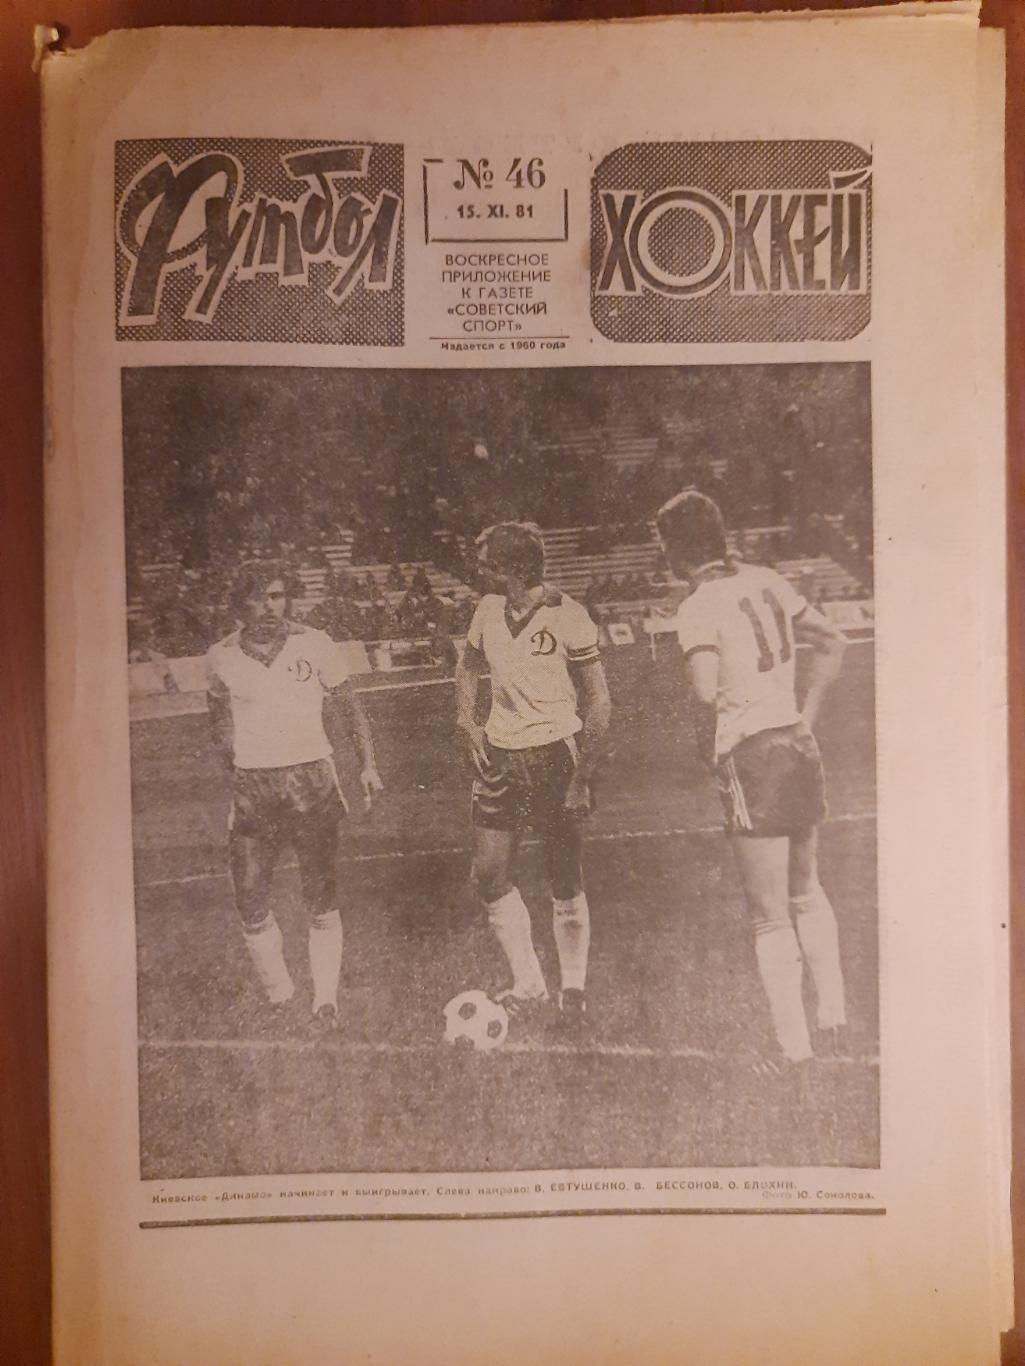 еженедельник футбол-хоккей #46,1981